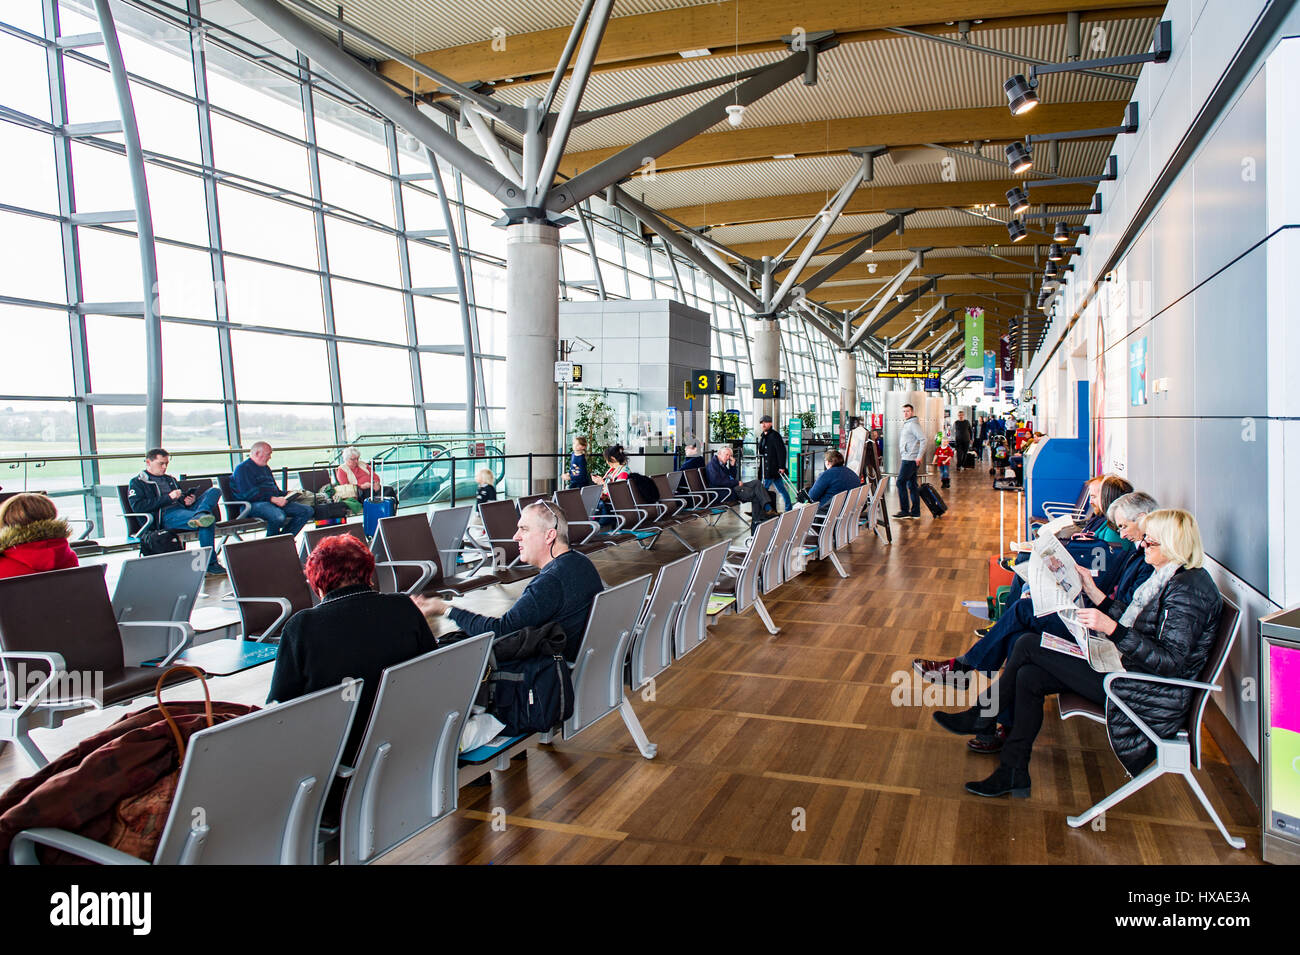 Salle des départs à l'aéroport de Cork, Cork, Irlande pleine de gens en attente de leur vol. Banque D'Images